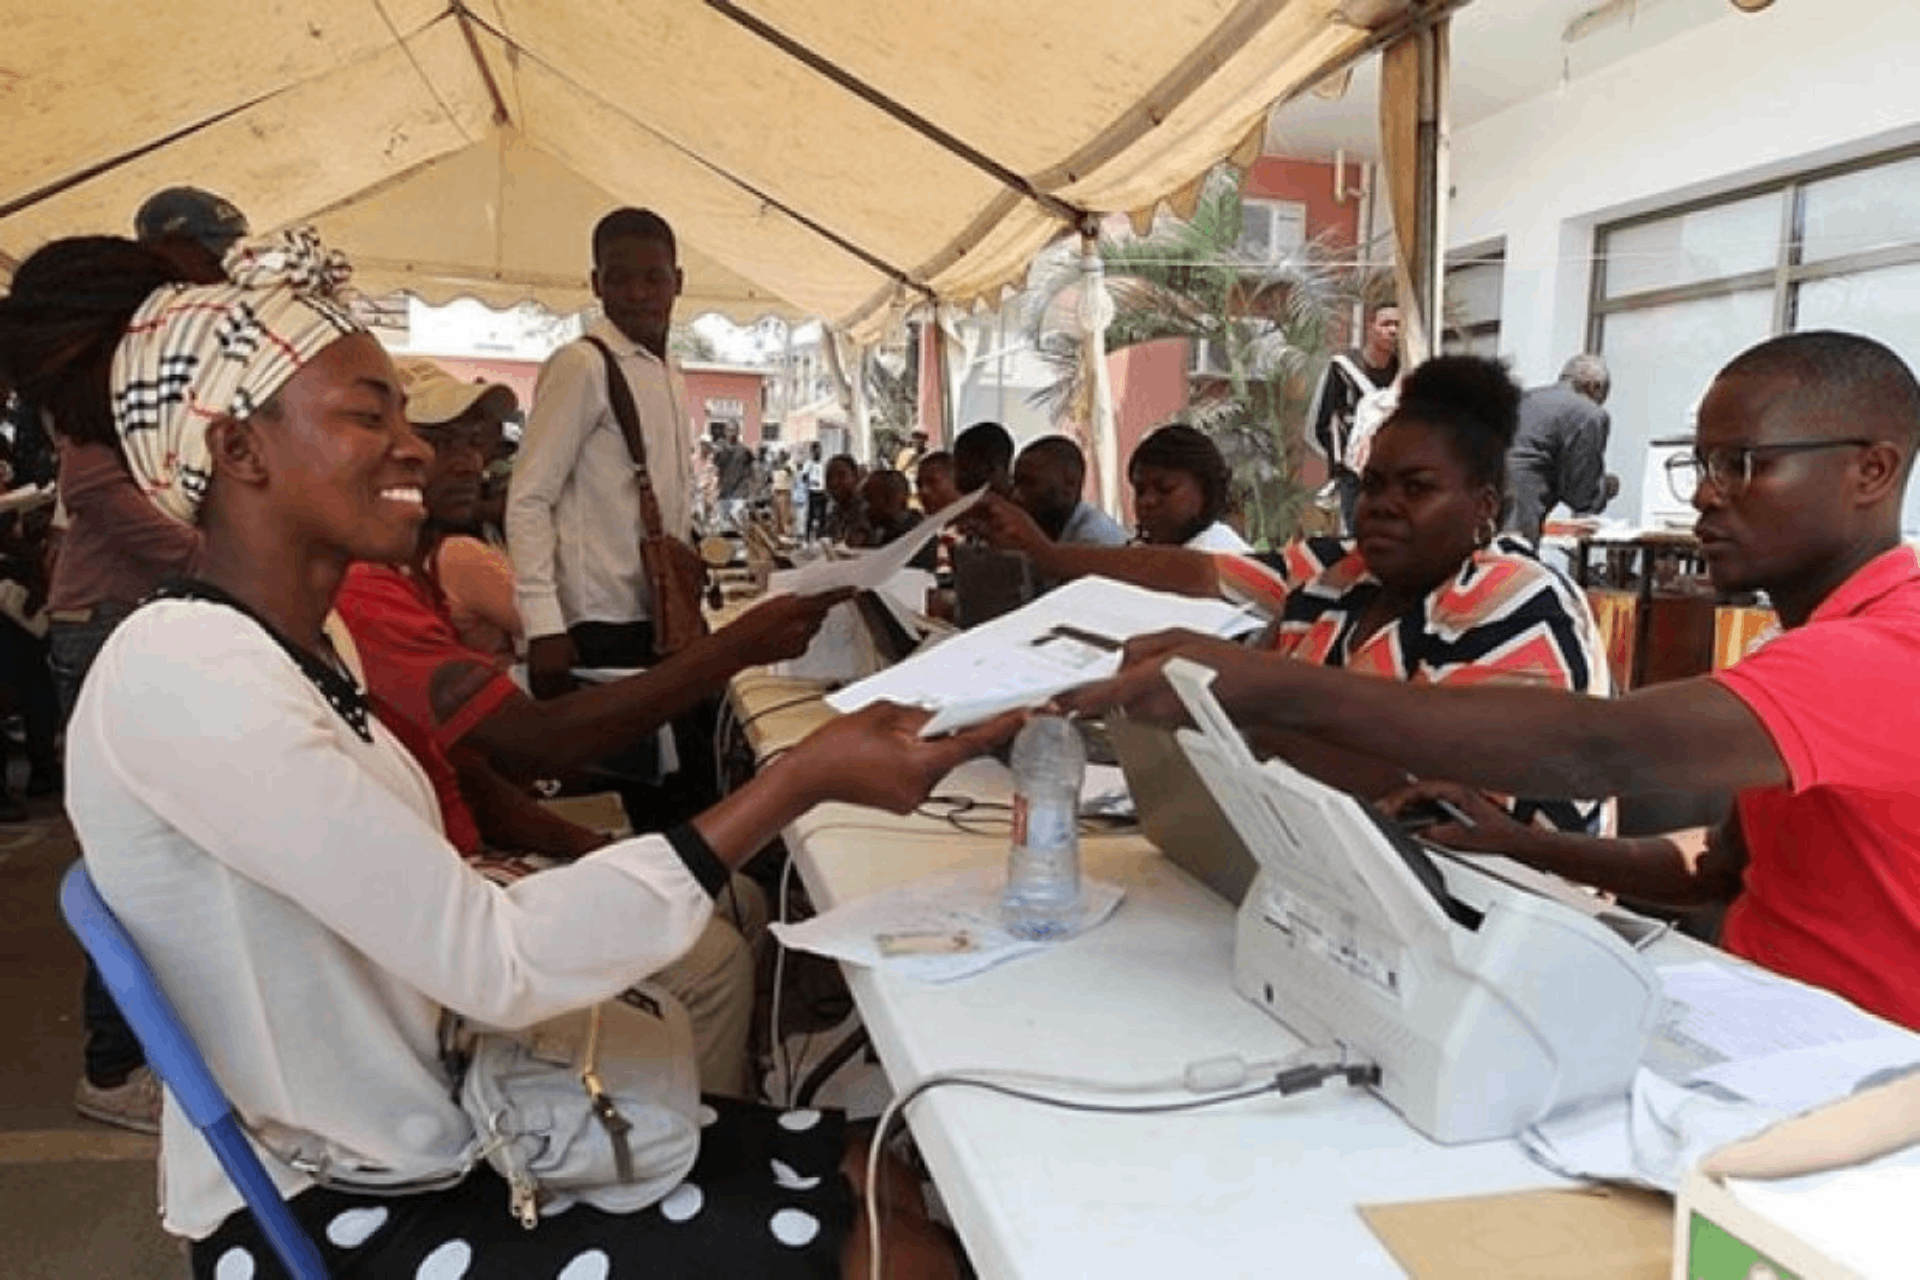 Candidatos com dupla candidatura serão excluidos do concurso público do Governo Provincial de Luanda